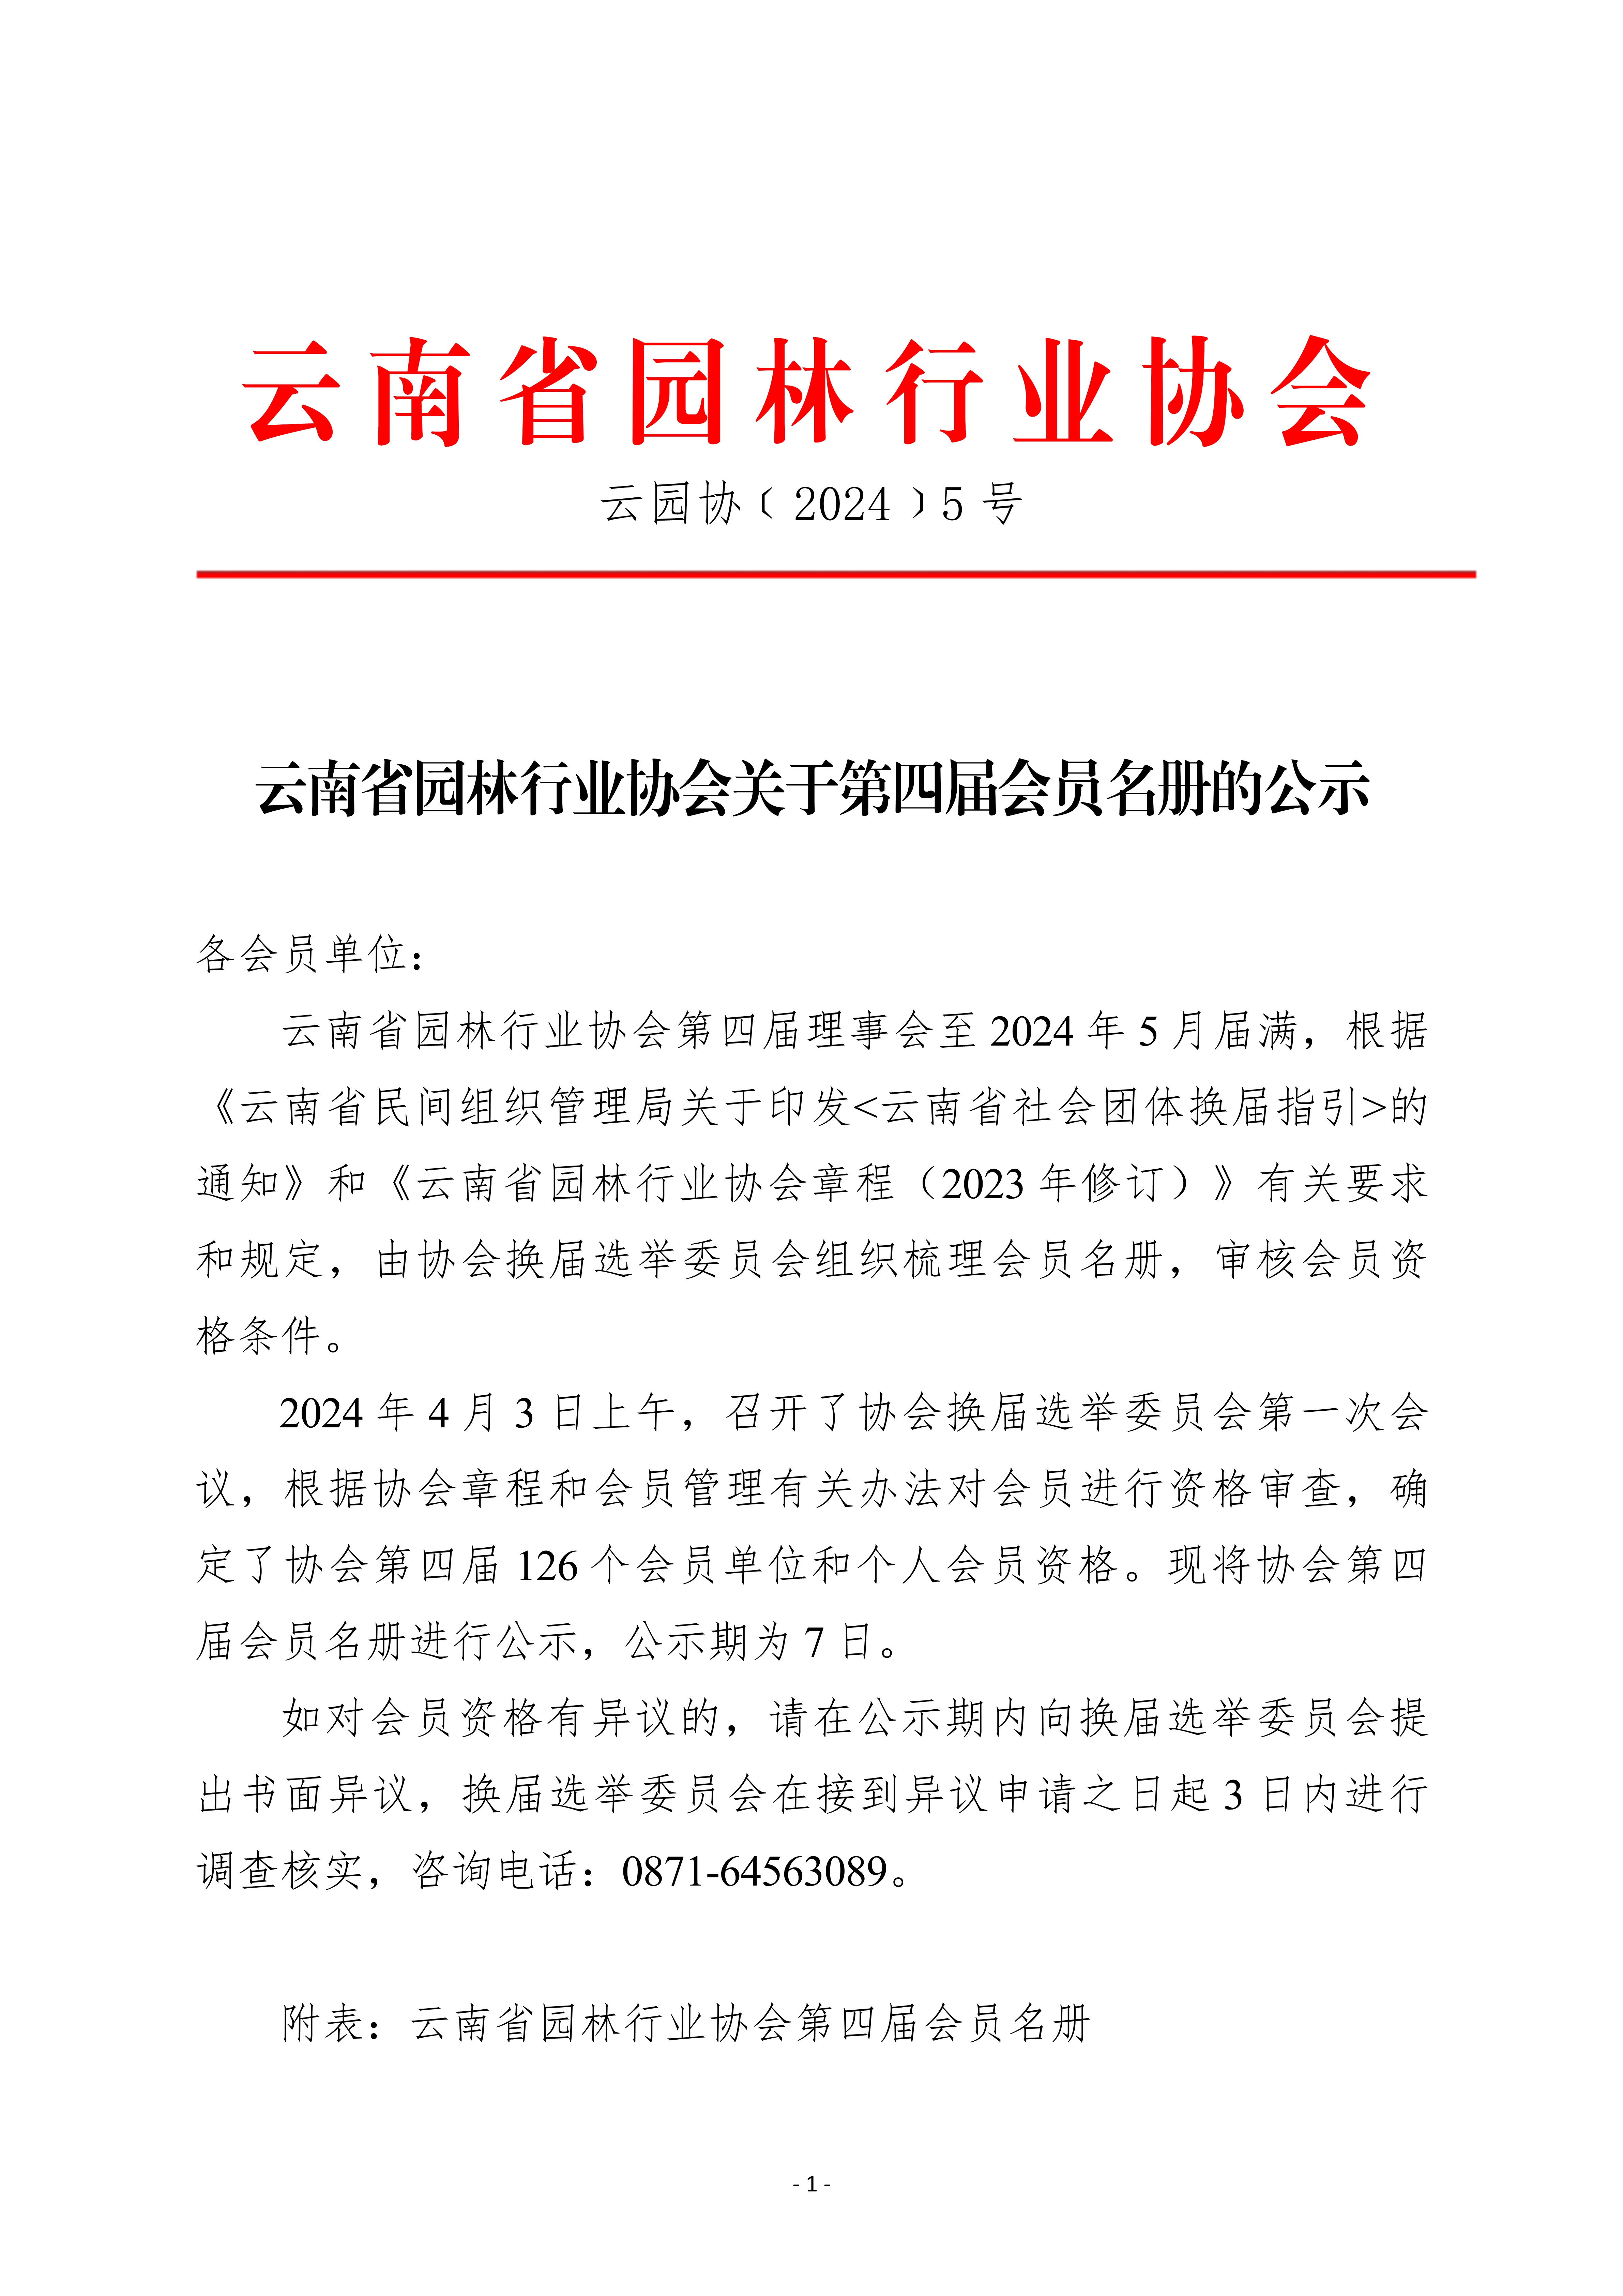 九州官方网站(中国)有限公司官网关于第四届会员名册的公示0403_1.jpg